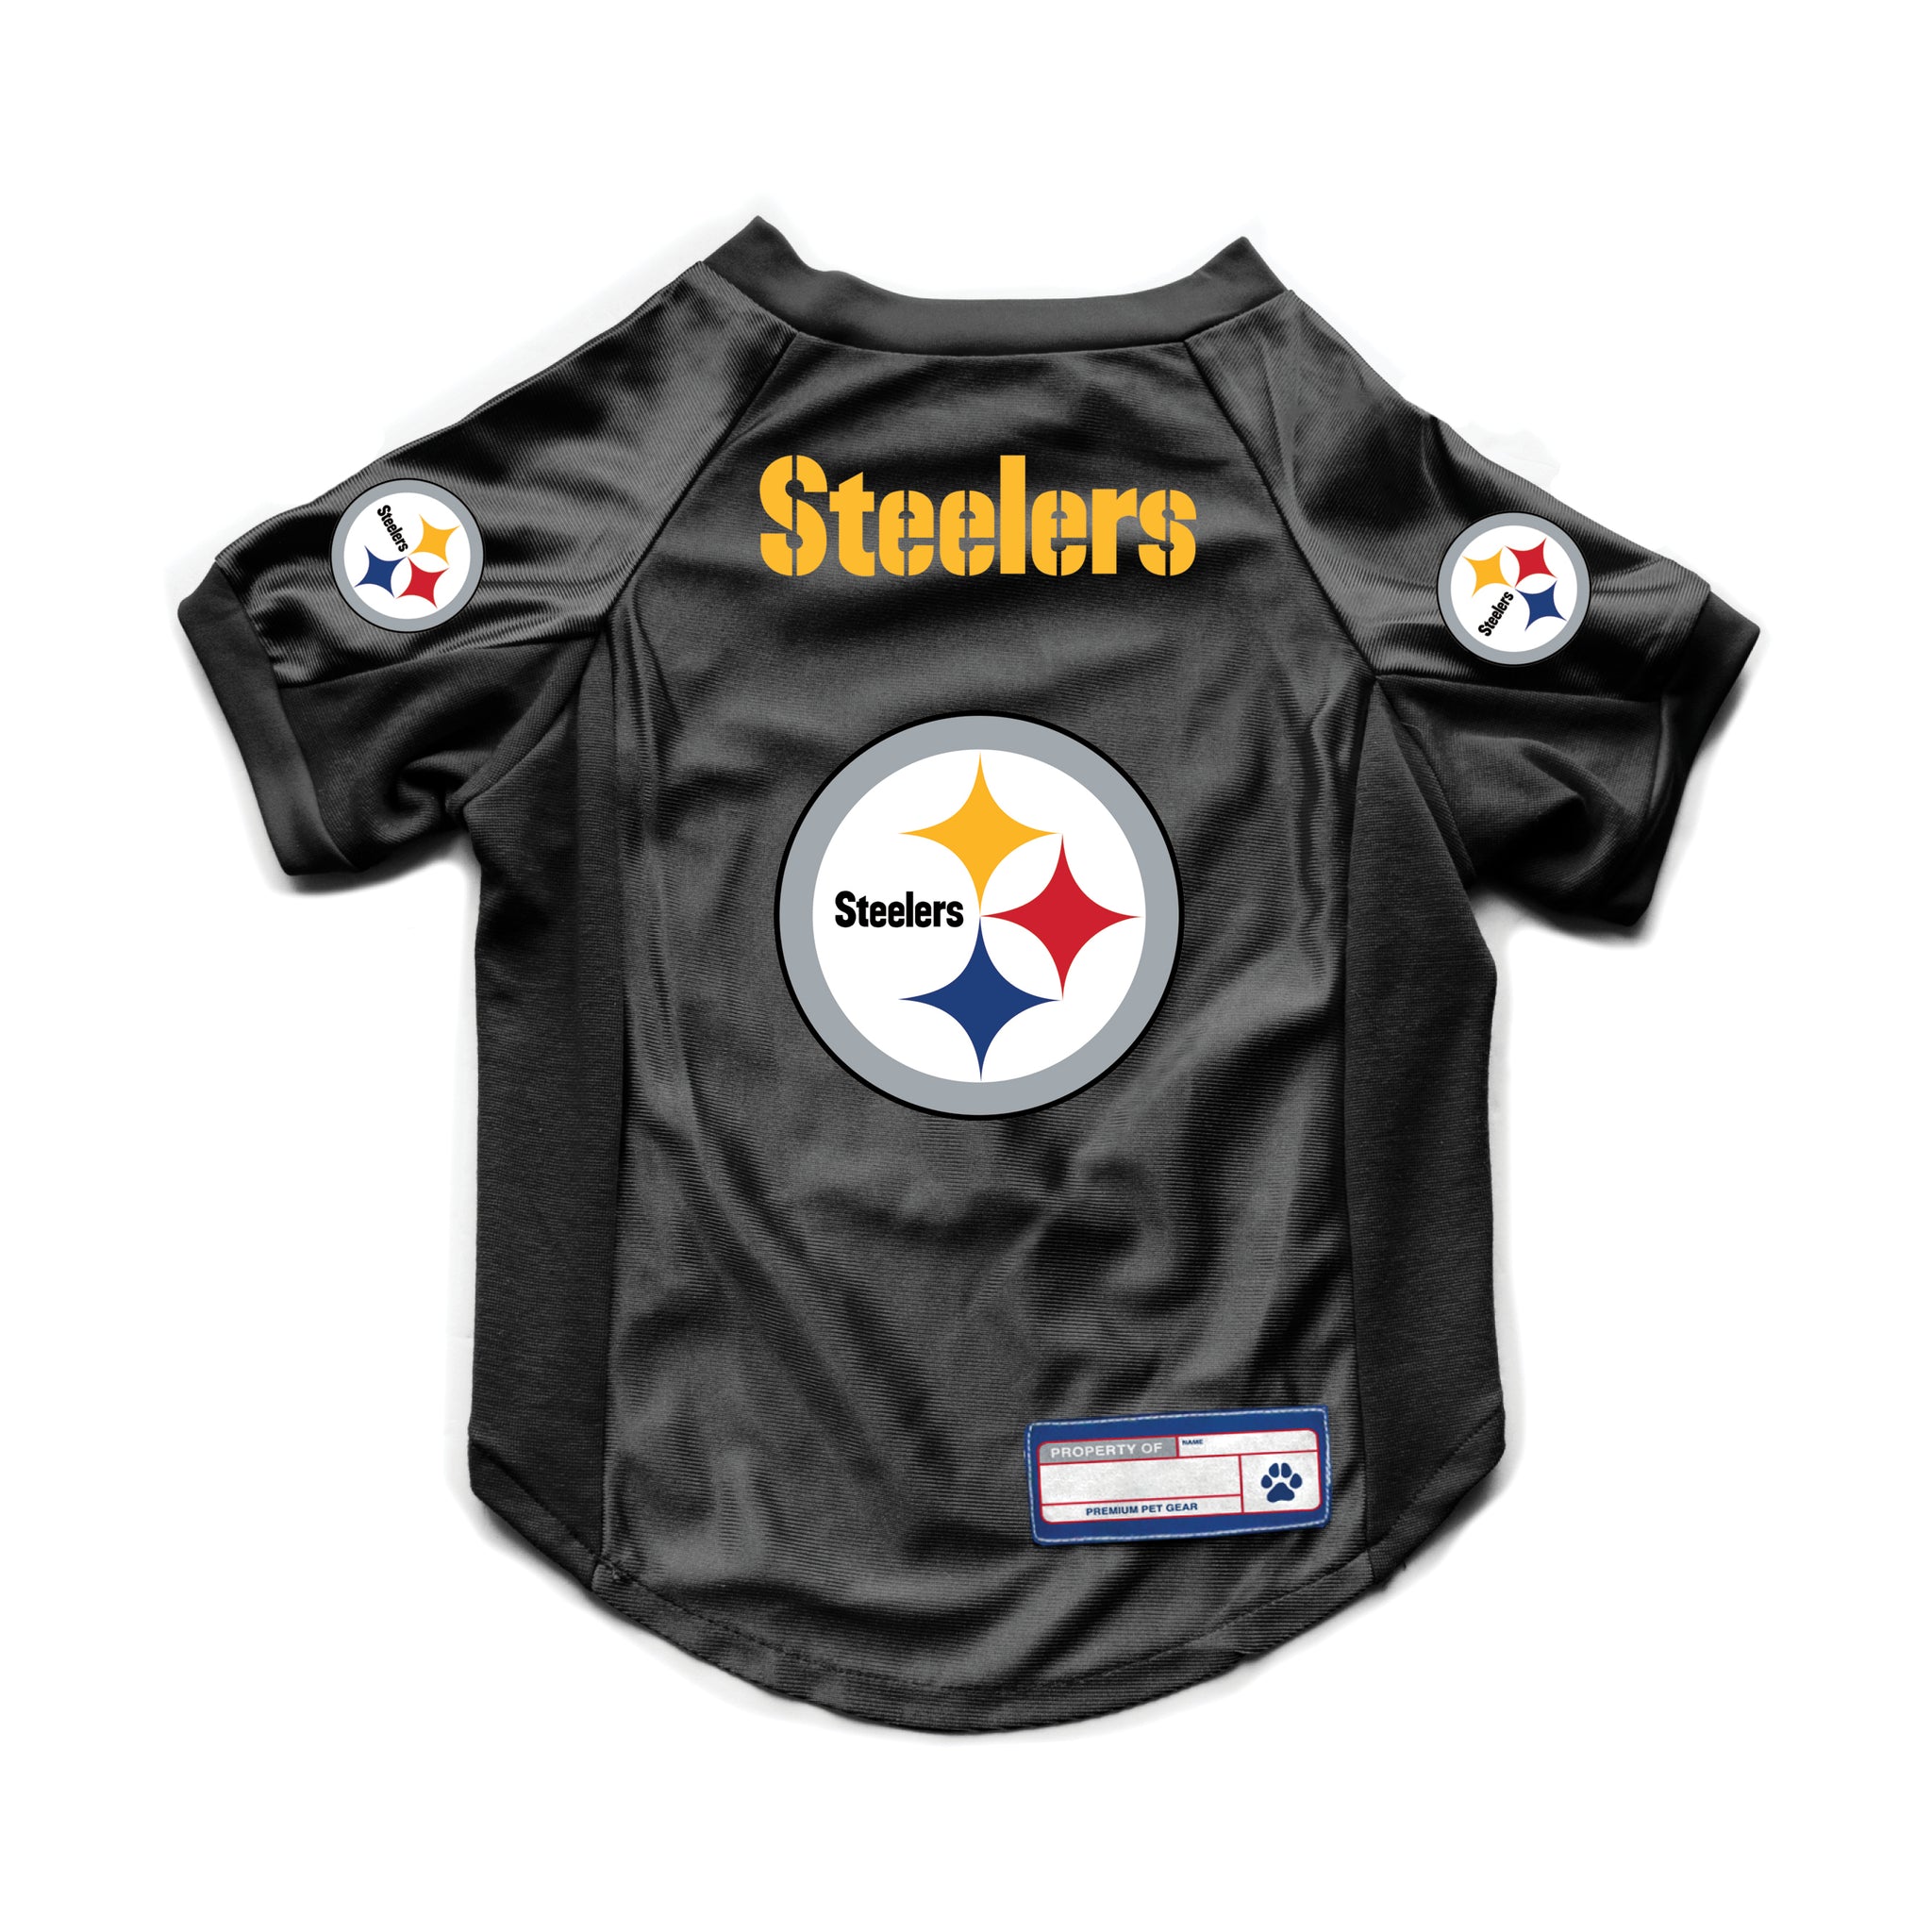 Pittsburgh Steelers Jerseys On Sale Gear, Steelers Jerseys